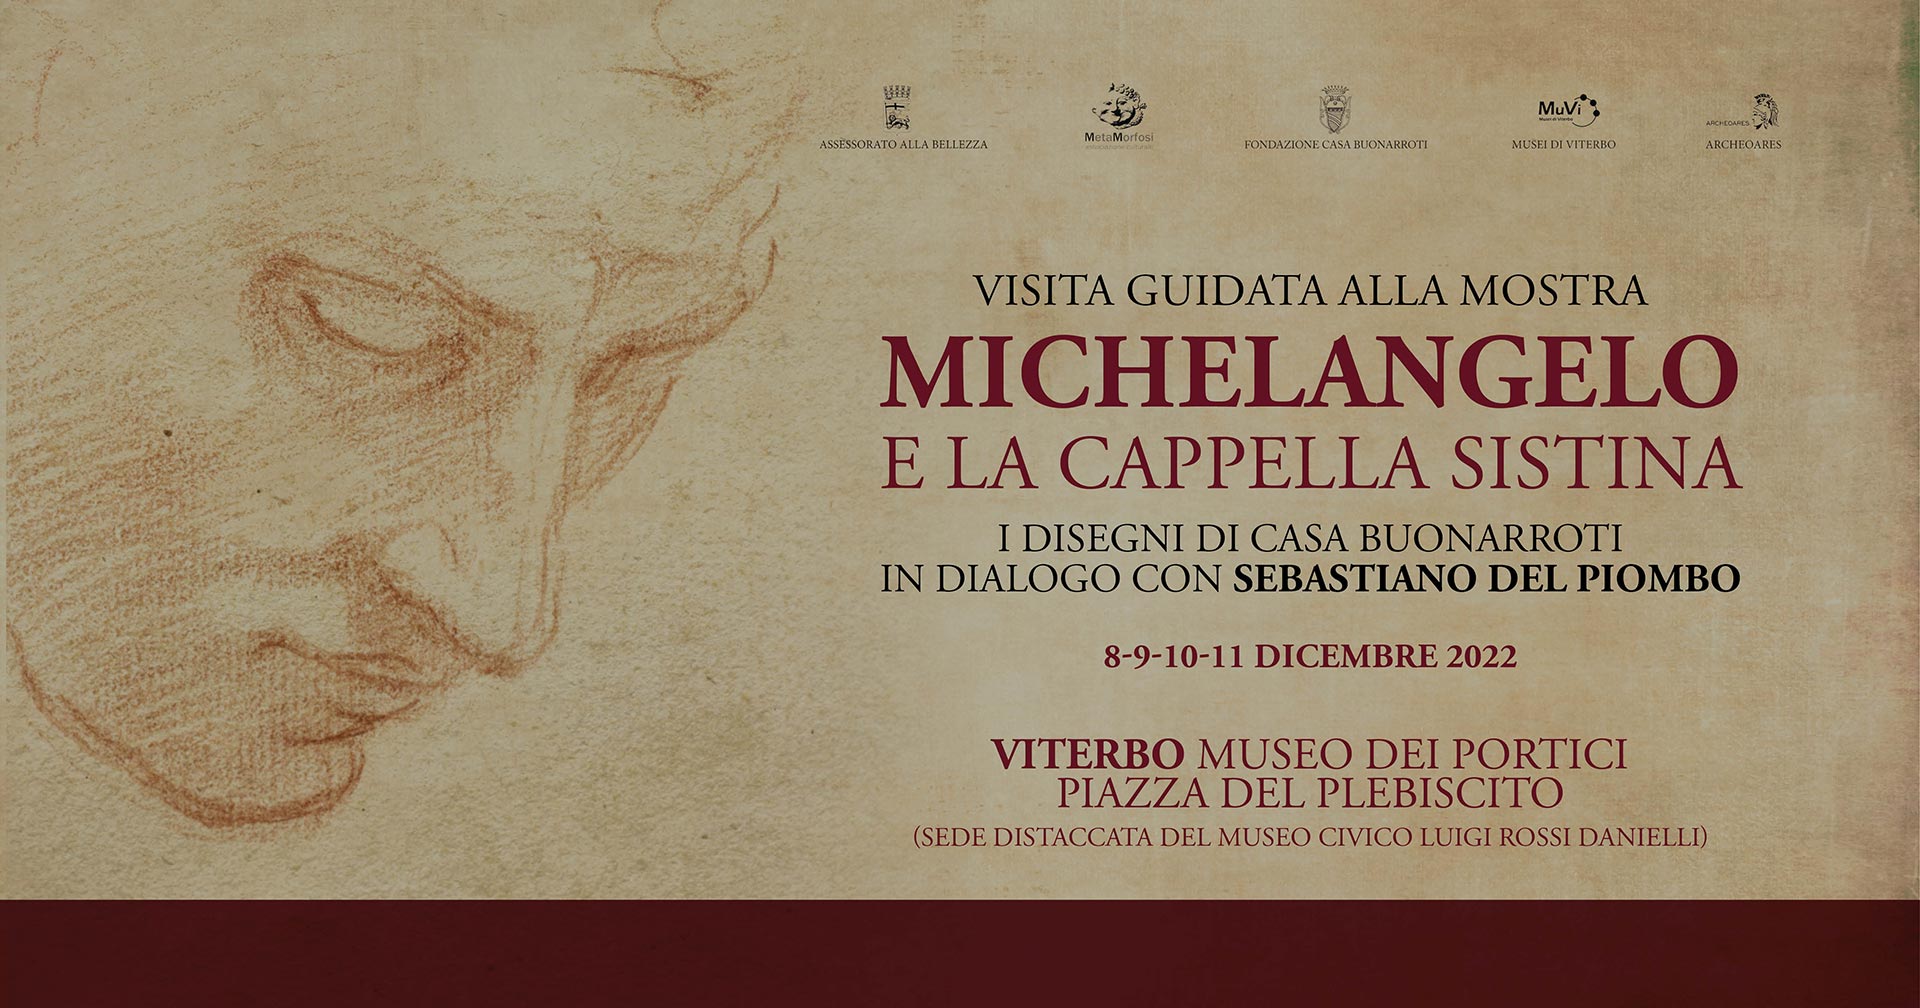 Locandina della Visita Guidata alla Mostra di Michelangelo e la cappella sistina